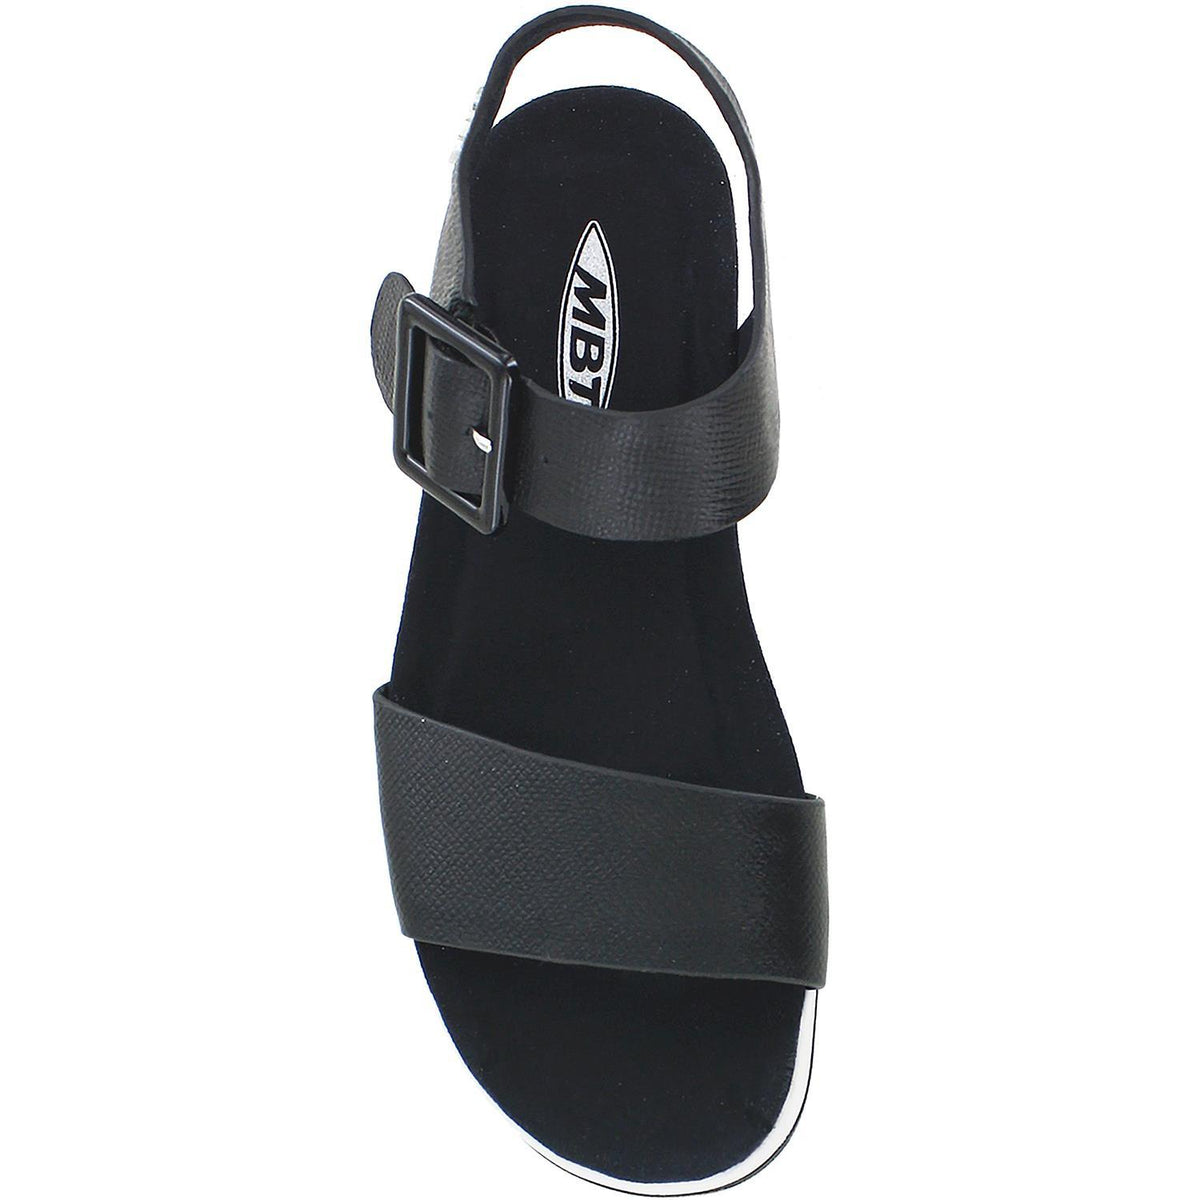 balance Fejlfri Appel til at være attraktiv MBT Manni 2 Sandals | MBT Women's Rocker Bottom Sandals | Footwear etc.